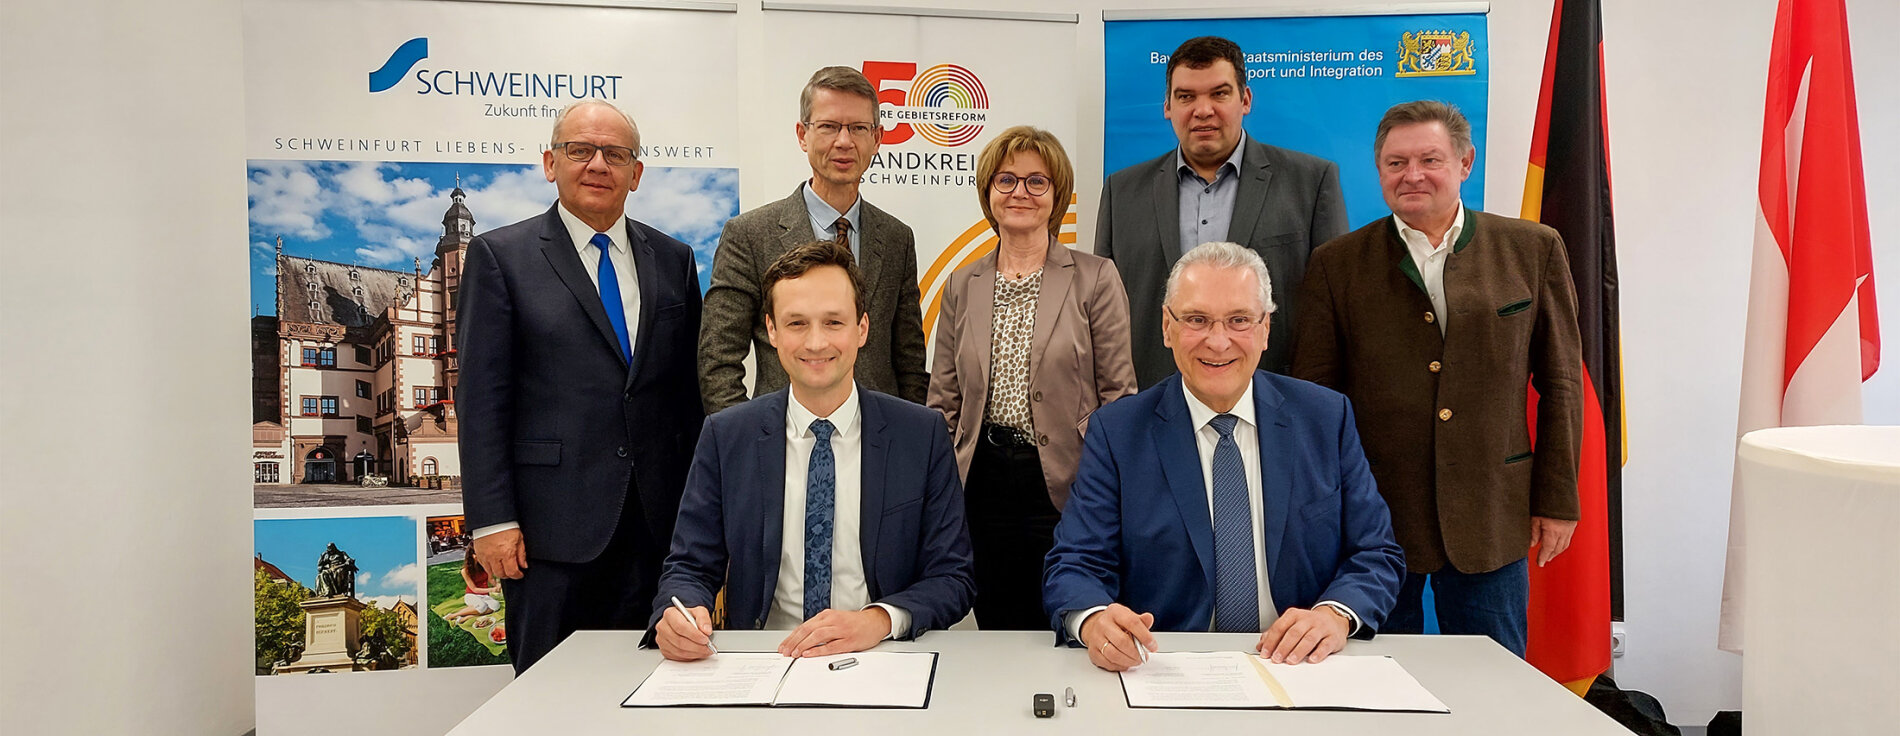 Herrmann und Vertreter des Zweckverbands bei Unterschrift, im Hintergrund Gerhard Eck und weitere Personen